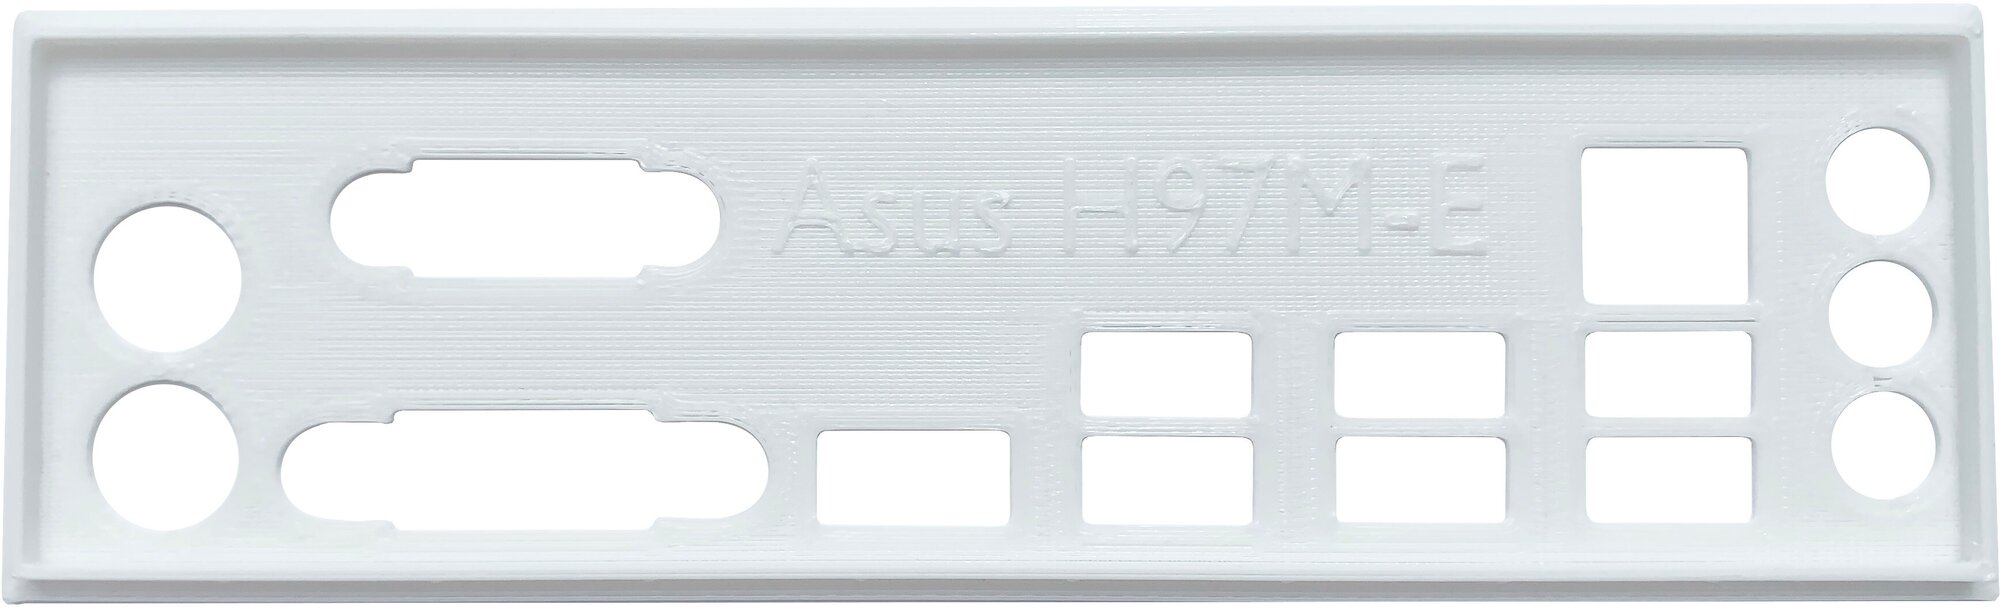 Заглушка для компьютерного корпуса к материнской плате Asus H97M-E white